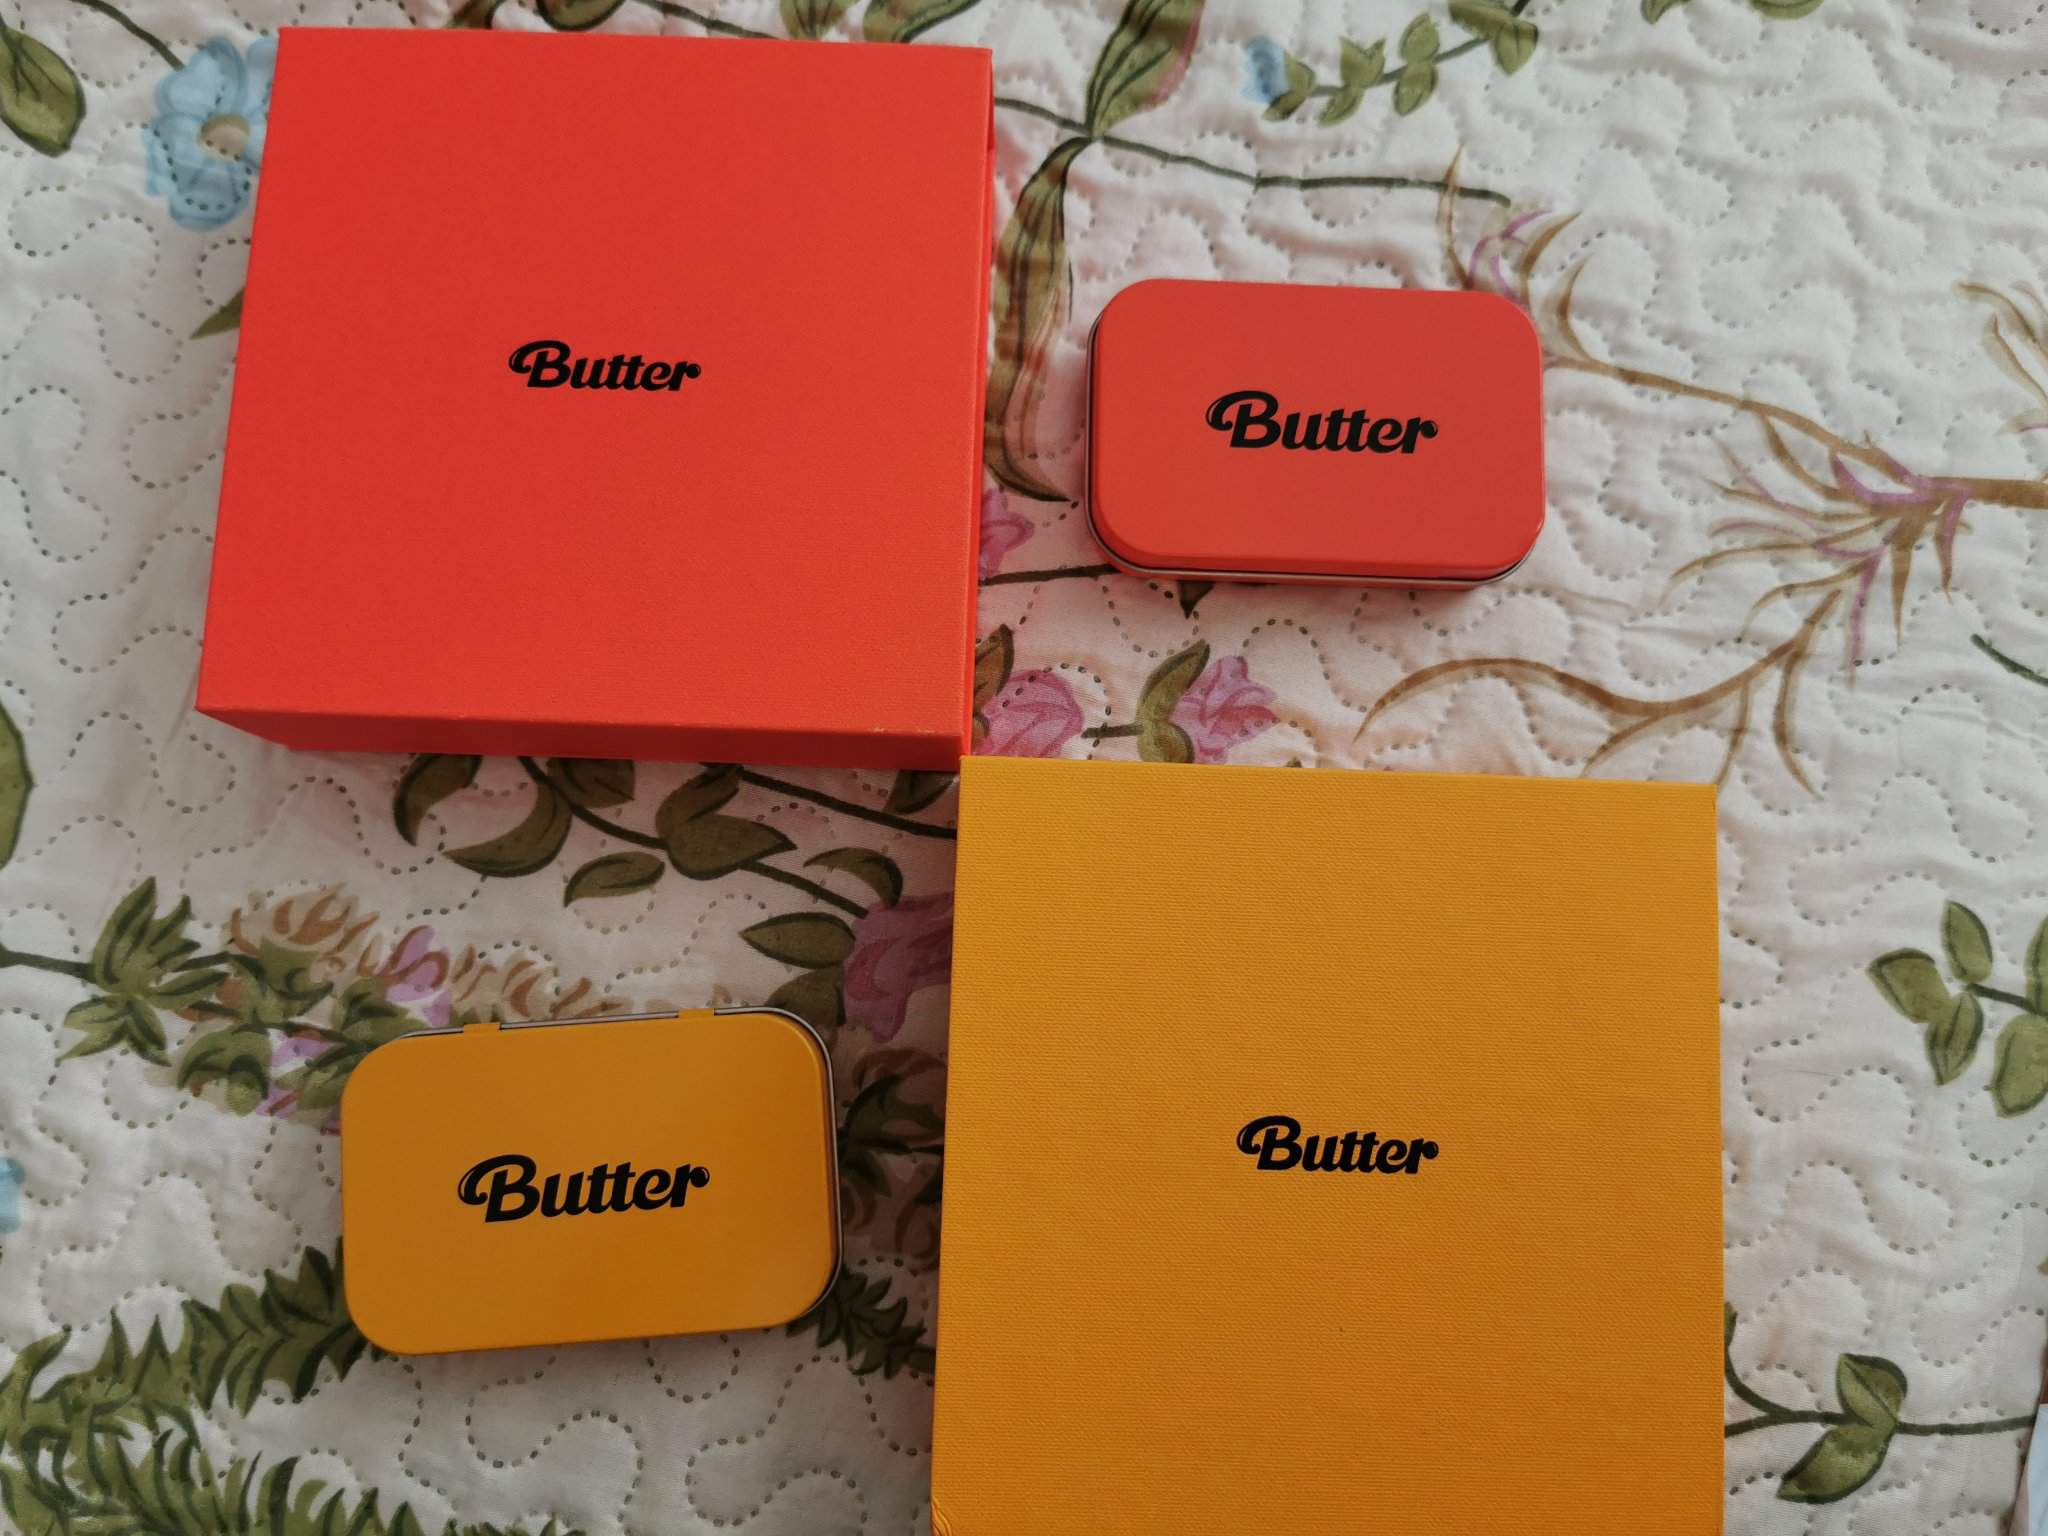 Album butter Butter (song)